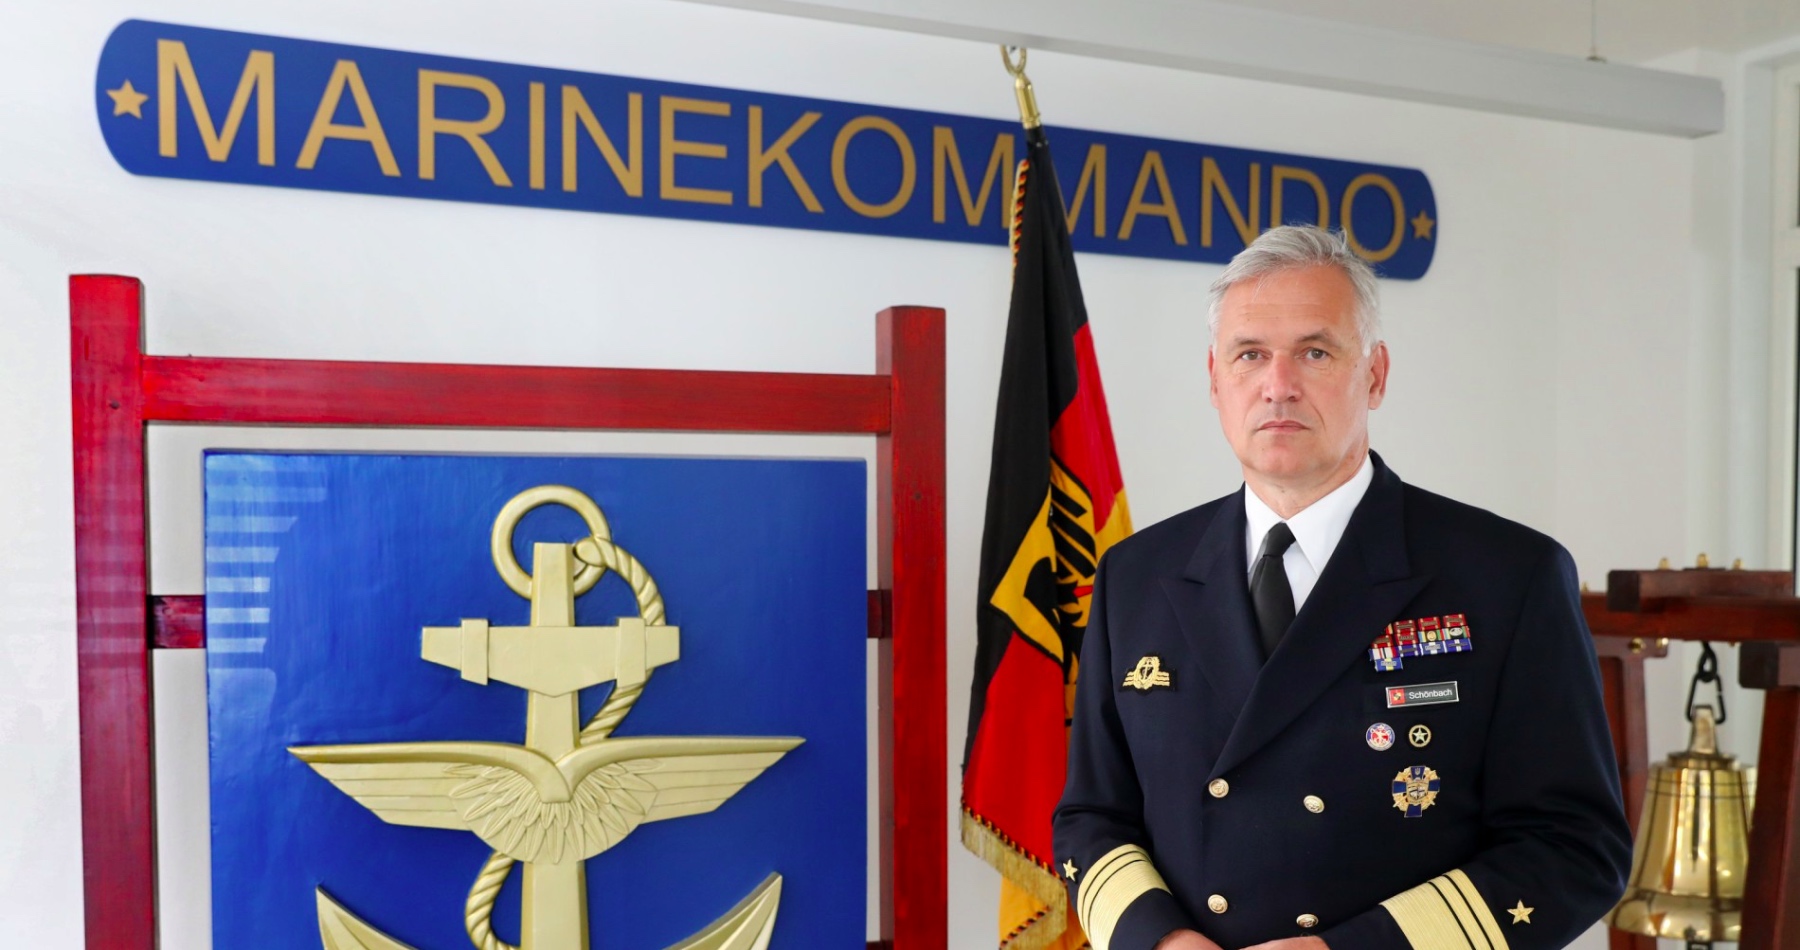 Šéf nemeckých námorných síl bol donútený odstúpiť, keď verejne odmietol konšpirácie o pláne Ruska vpadnúť na Ukrajinu. Schönbach navyše dodal, že Putin si zaslúži rešpekt